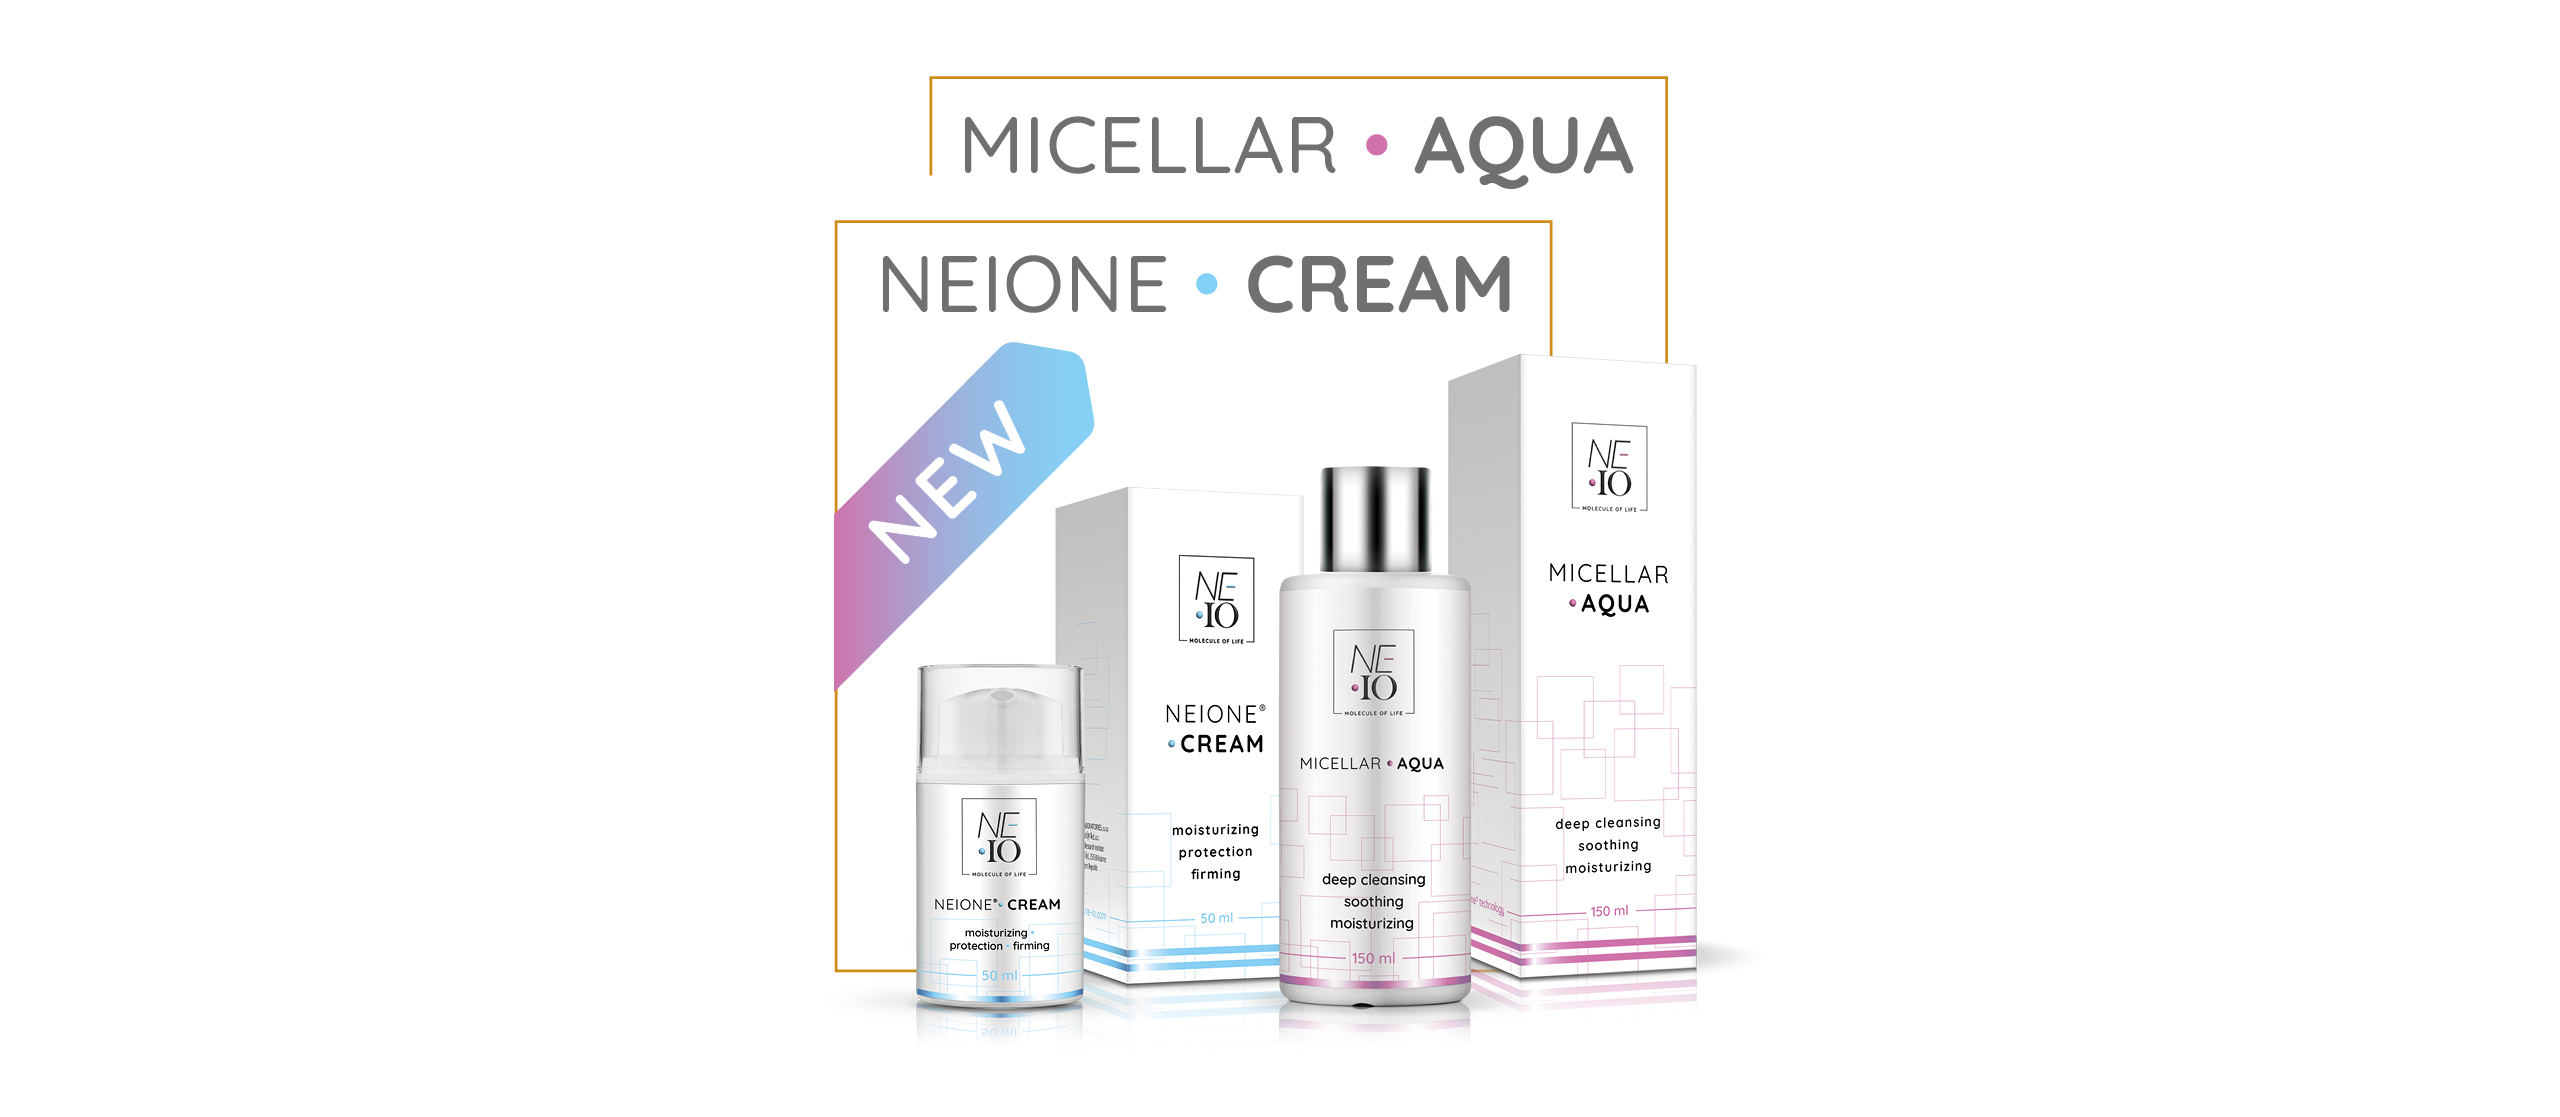 Neione cream + Micellar aqua 1920x838